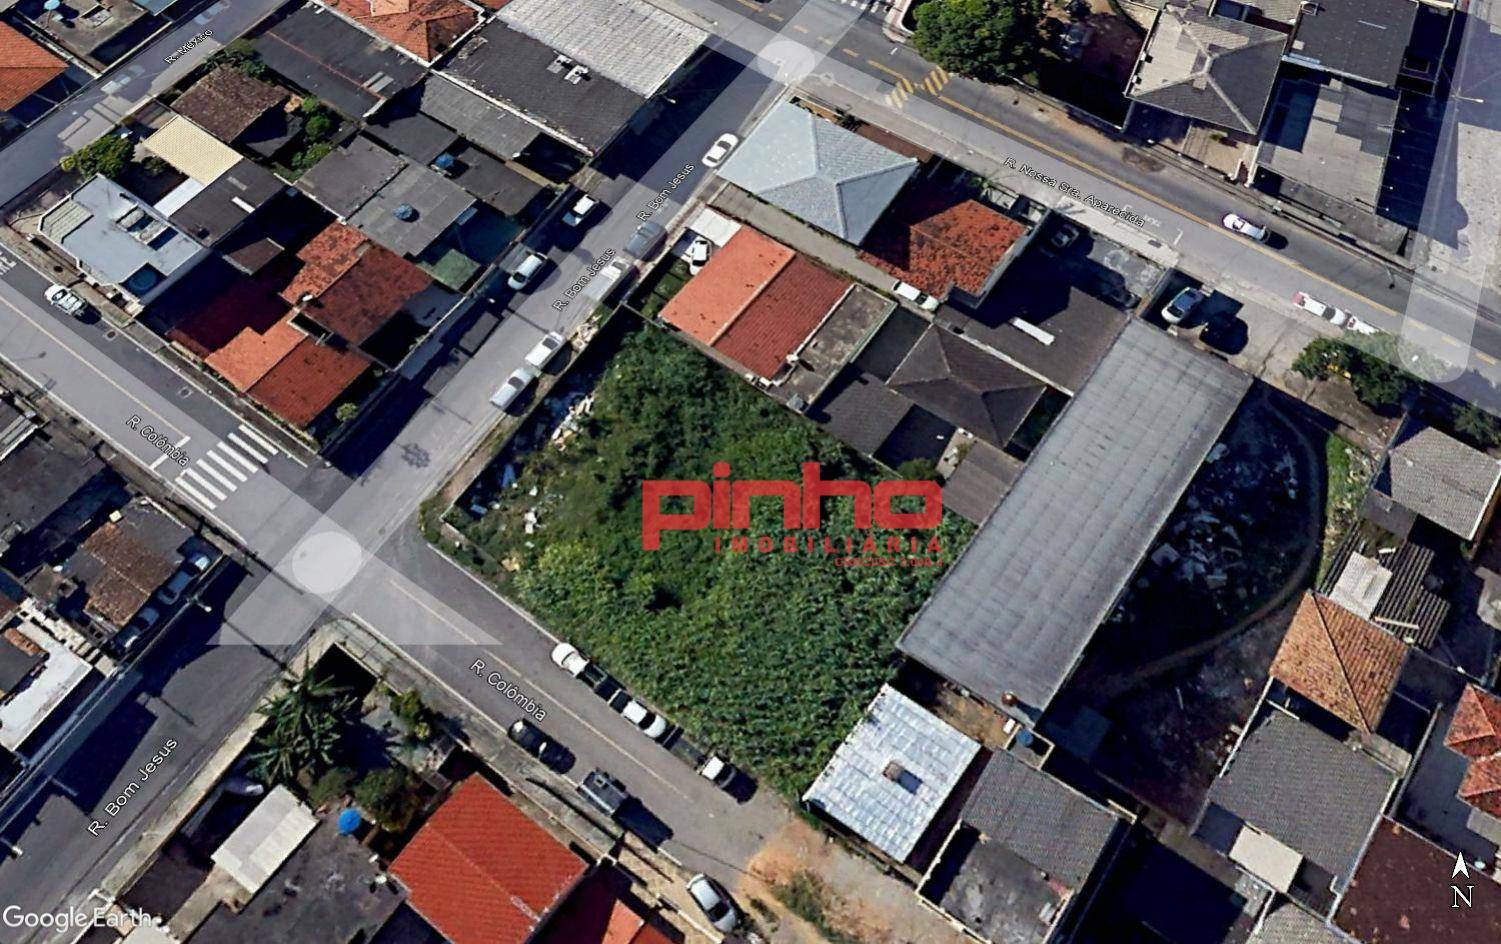 Terreno à venda, 817 m² por R$ 850.000 - Barreiros - São José/SC